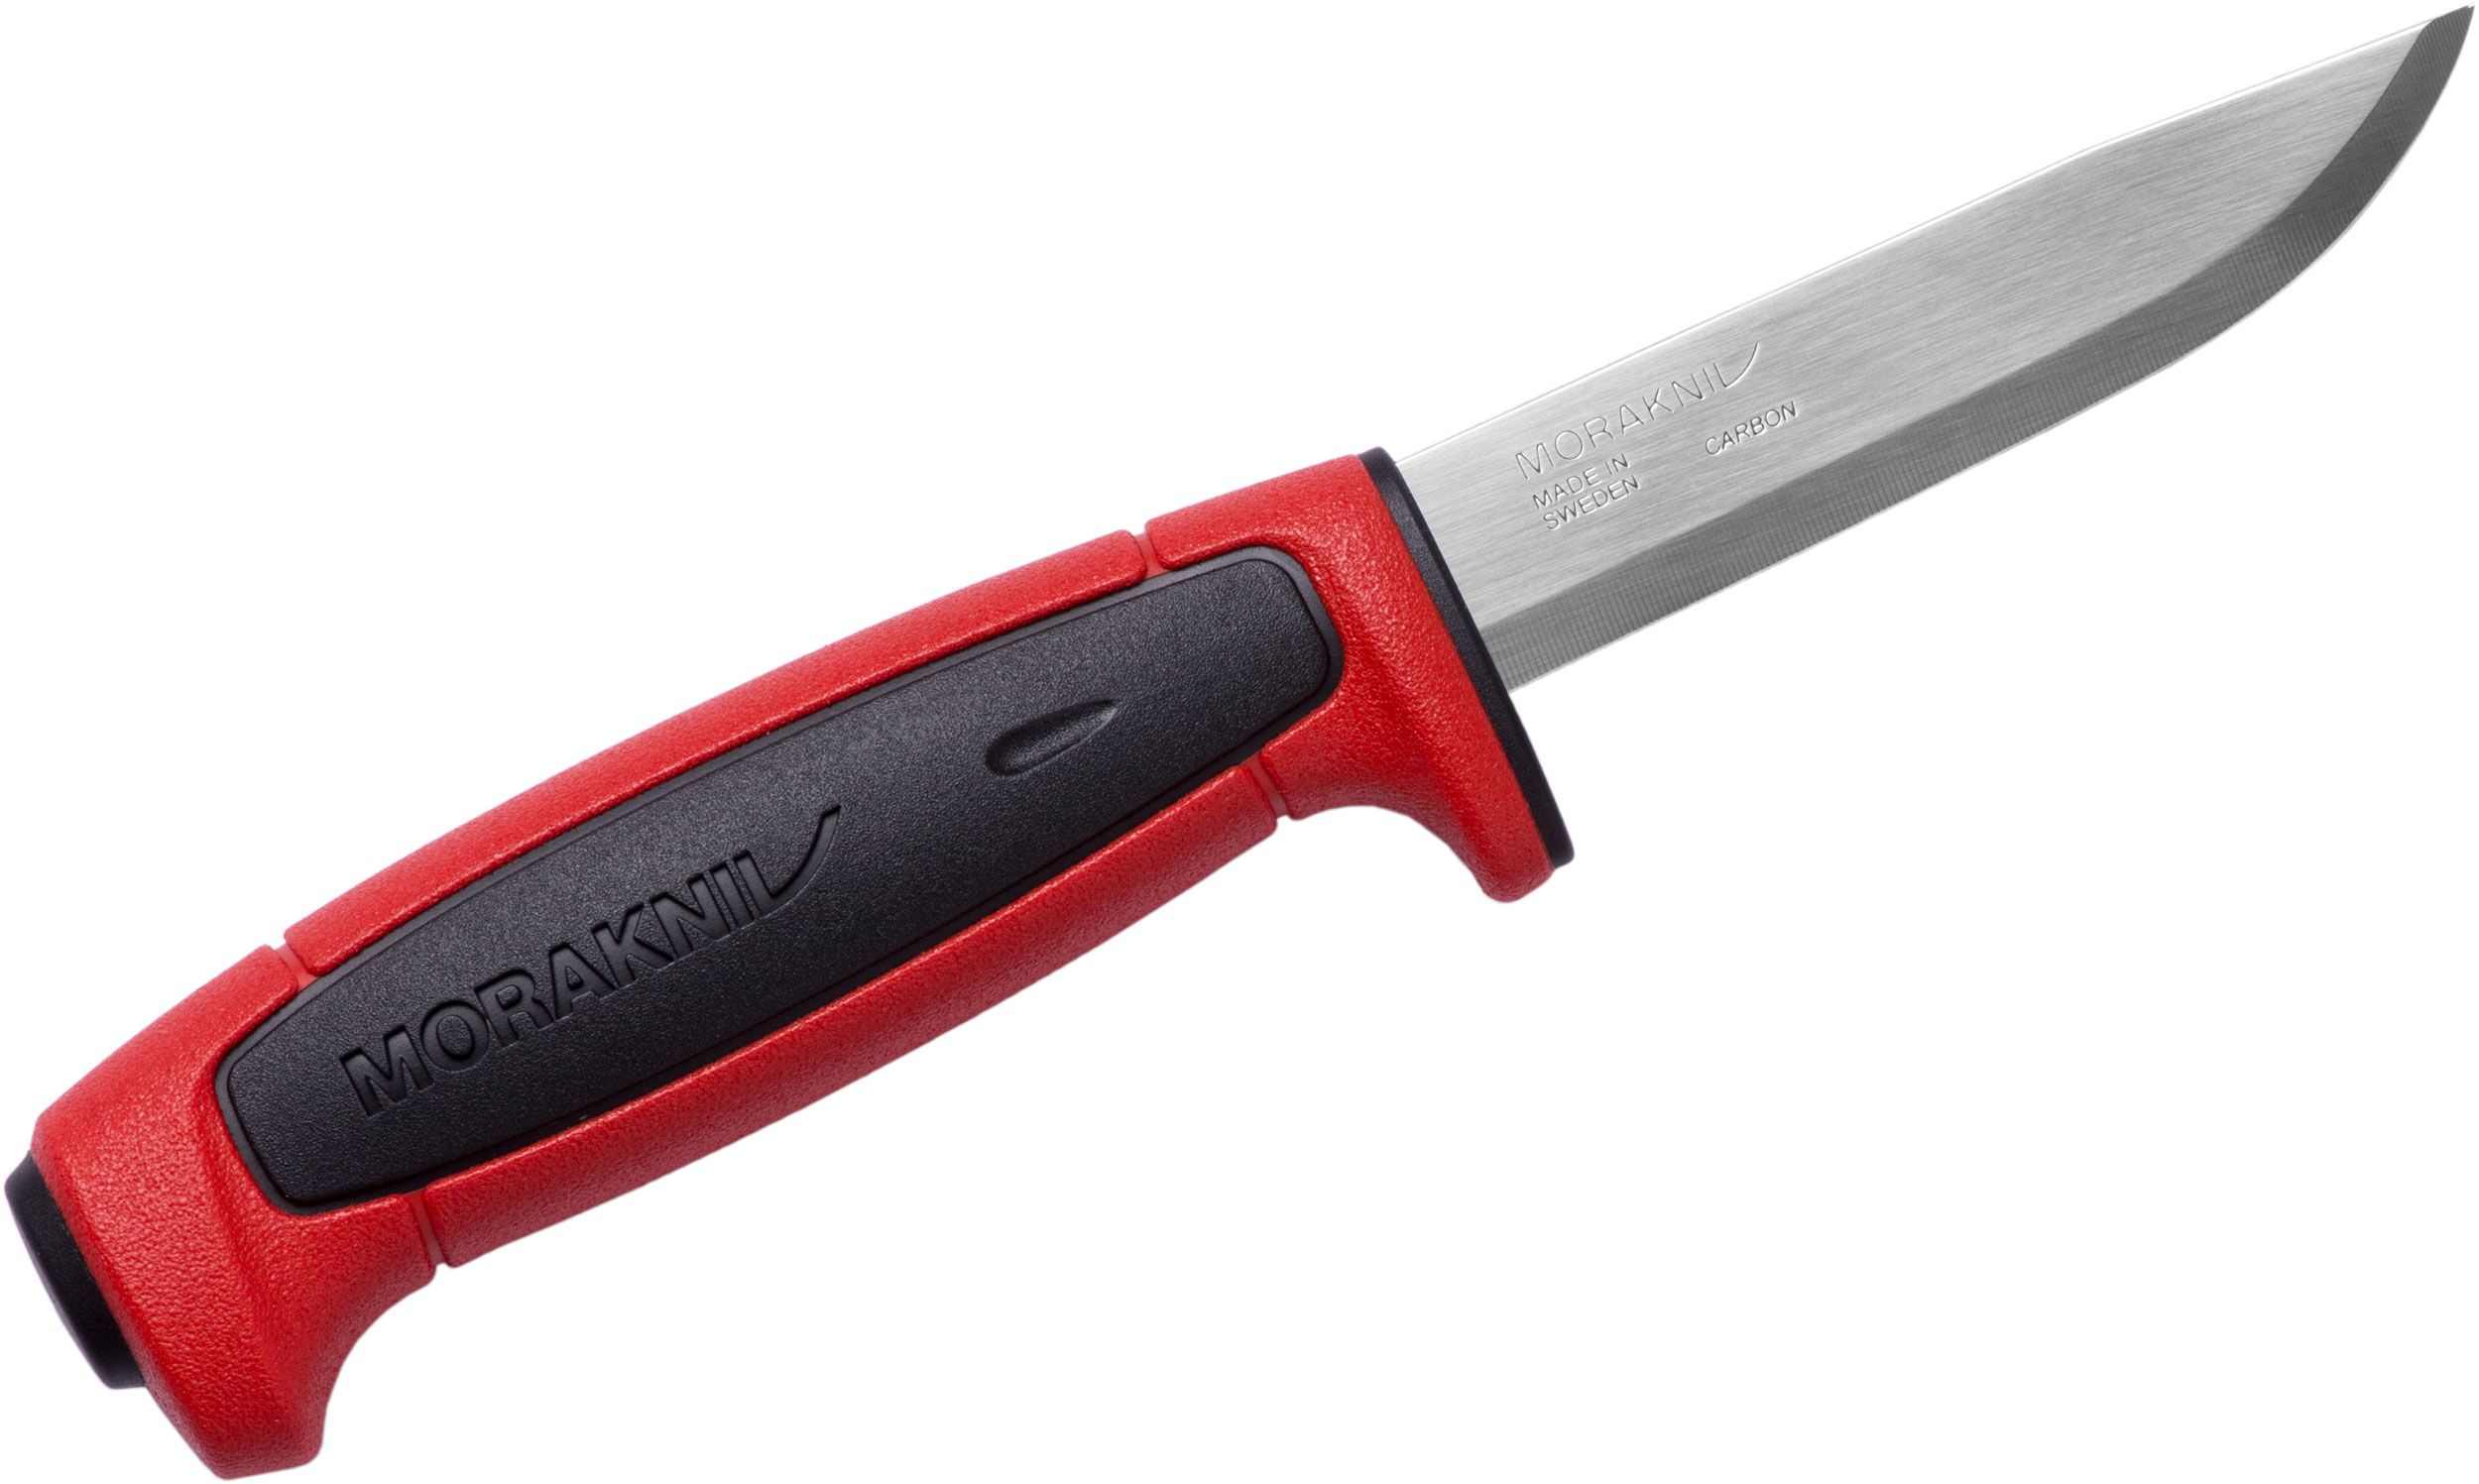 Morakniv Mora of Sweden Basic 511 Fixed 3.5 Carbon Steel Polished Plain  Blade, Red/Black Polypropylene Handle, Polymer Sheath - KnifeCenter -  M-13245